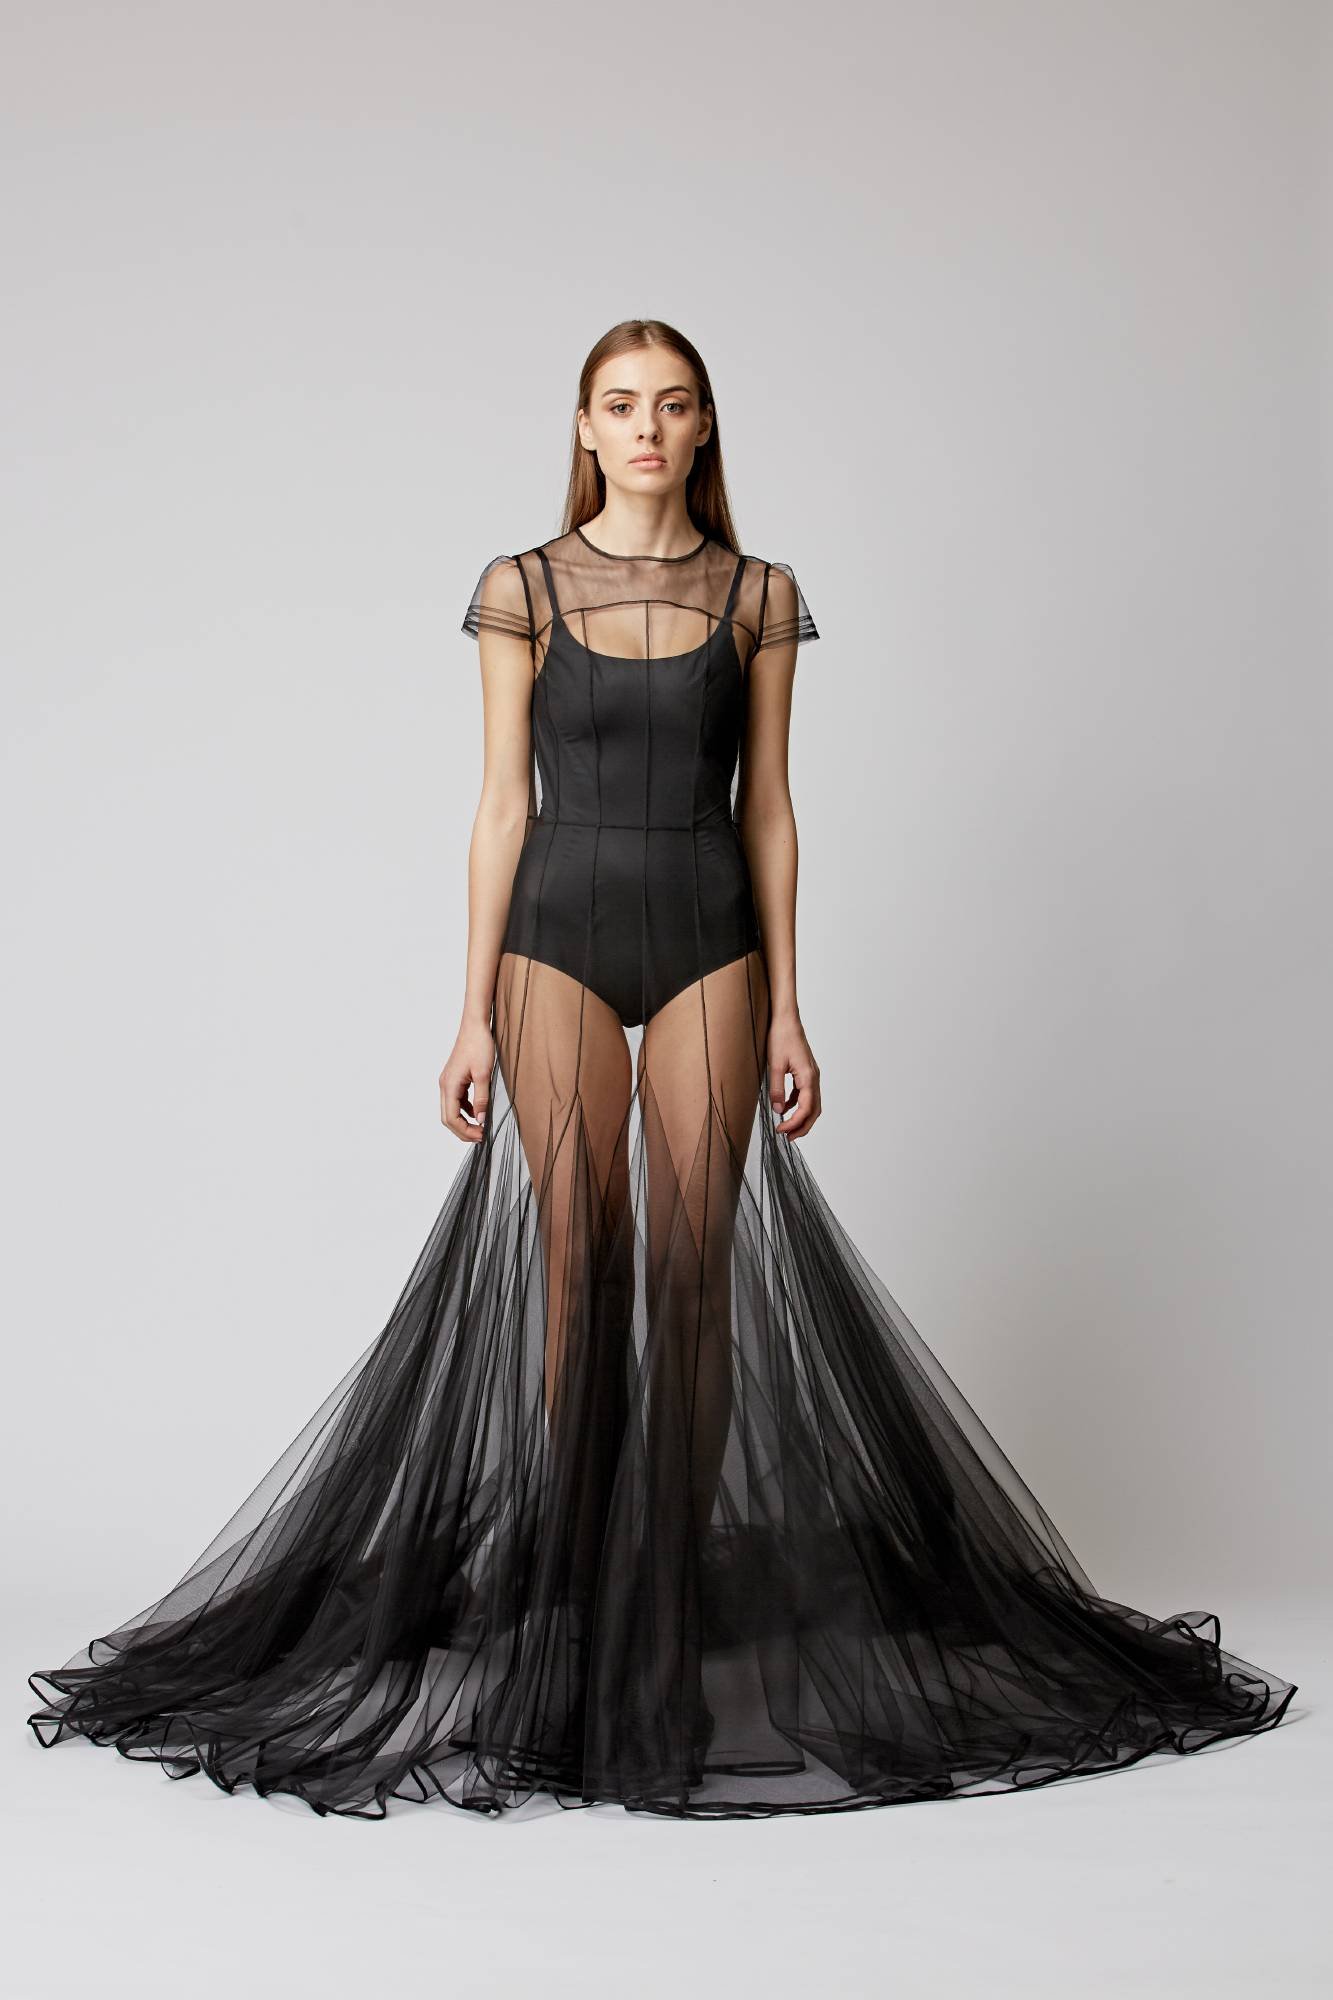 Черная прозрачная юбка. Прозрачное платье. Прозрачное черное платье. Платье с прозрачной юбкой.